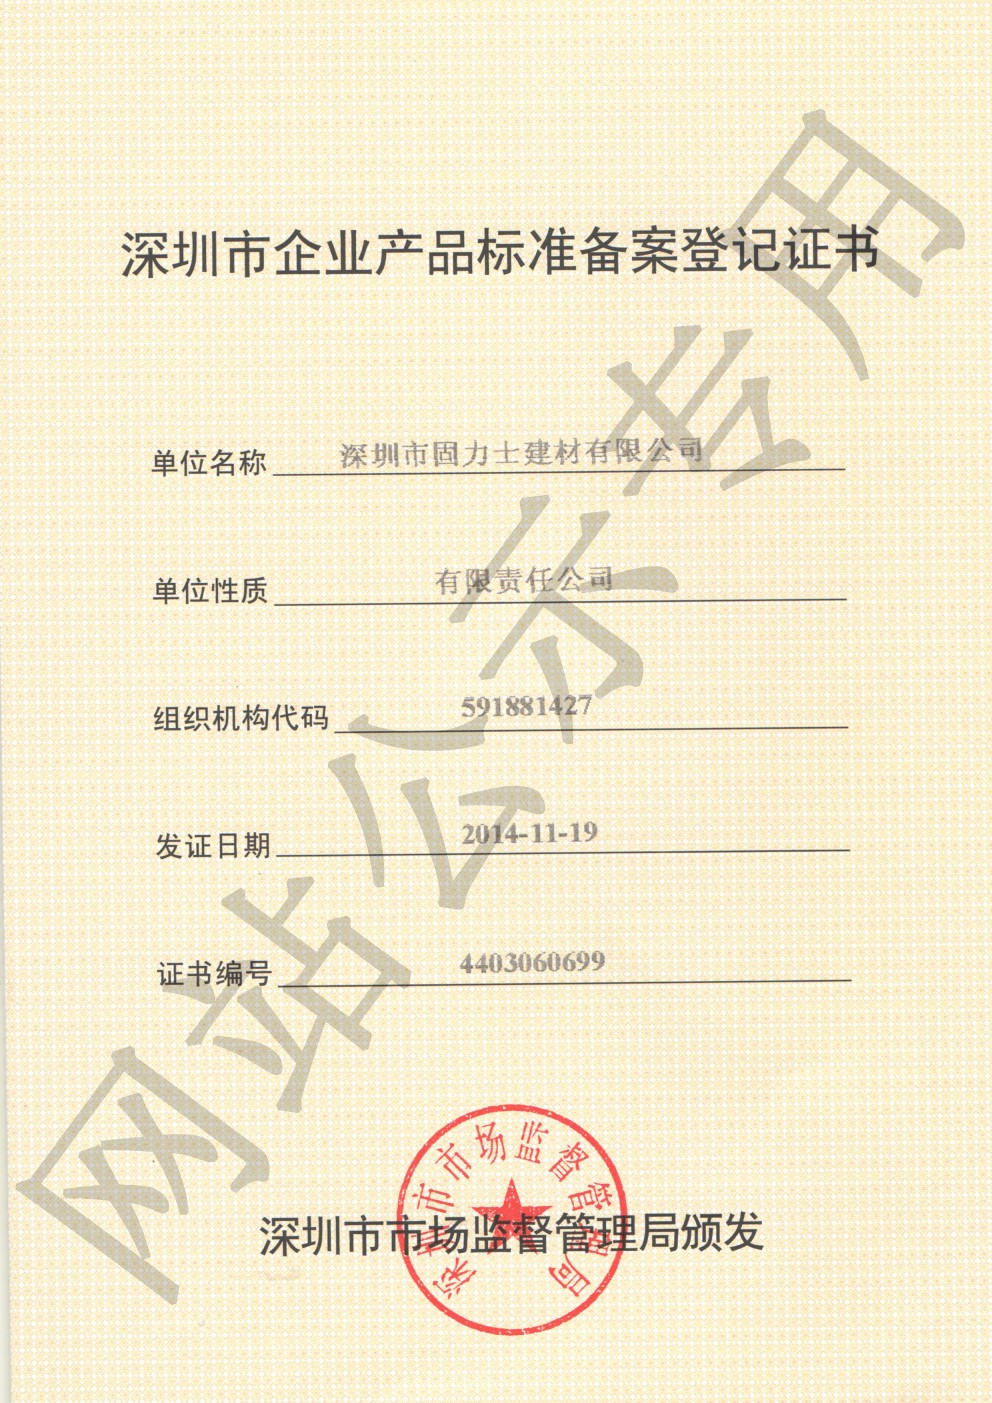 阿合奇企业产品标准登记证书